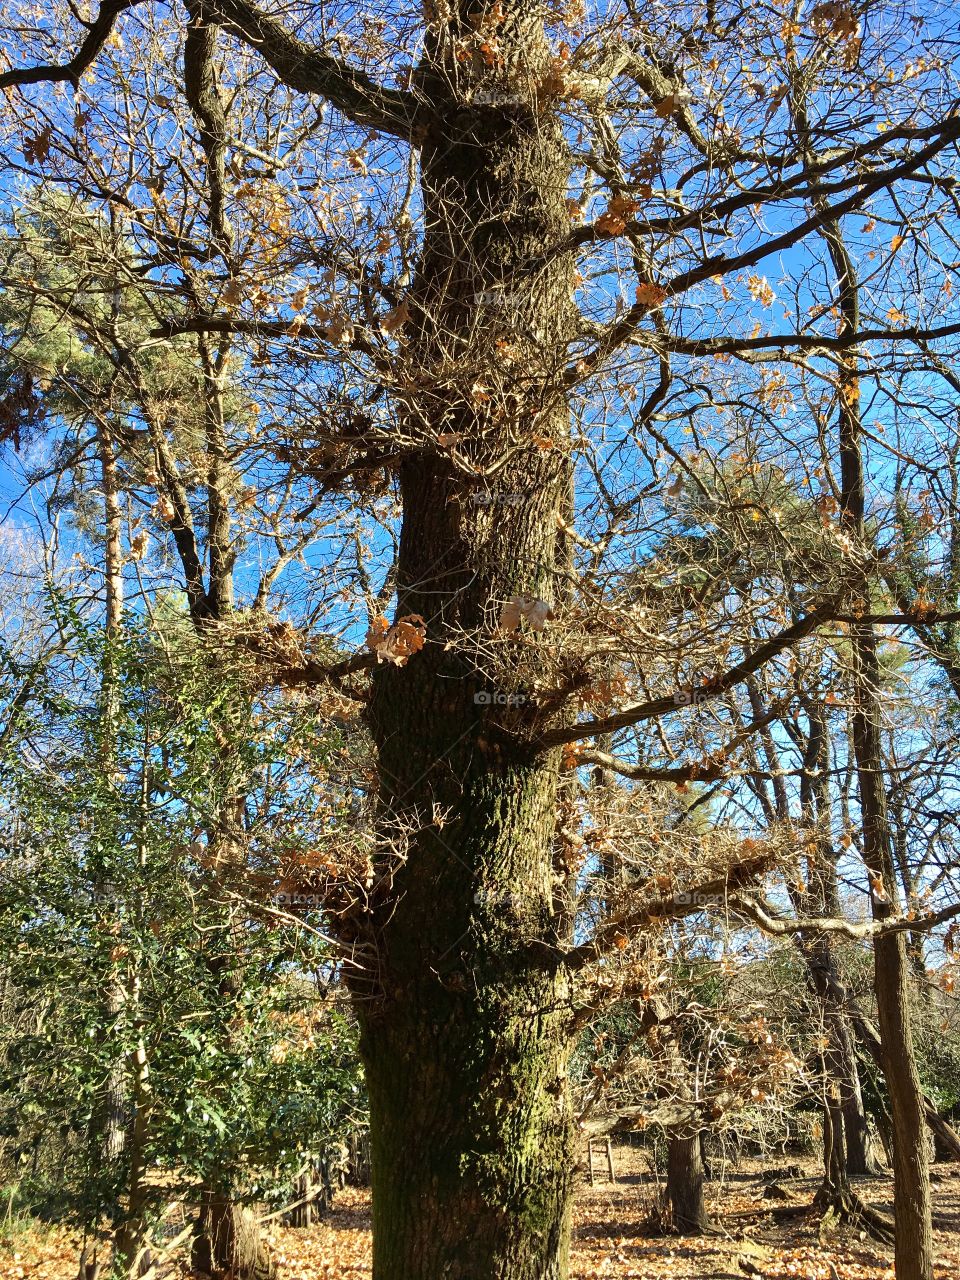 Pedinculate oak in Regionale Park Spina Verde